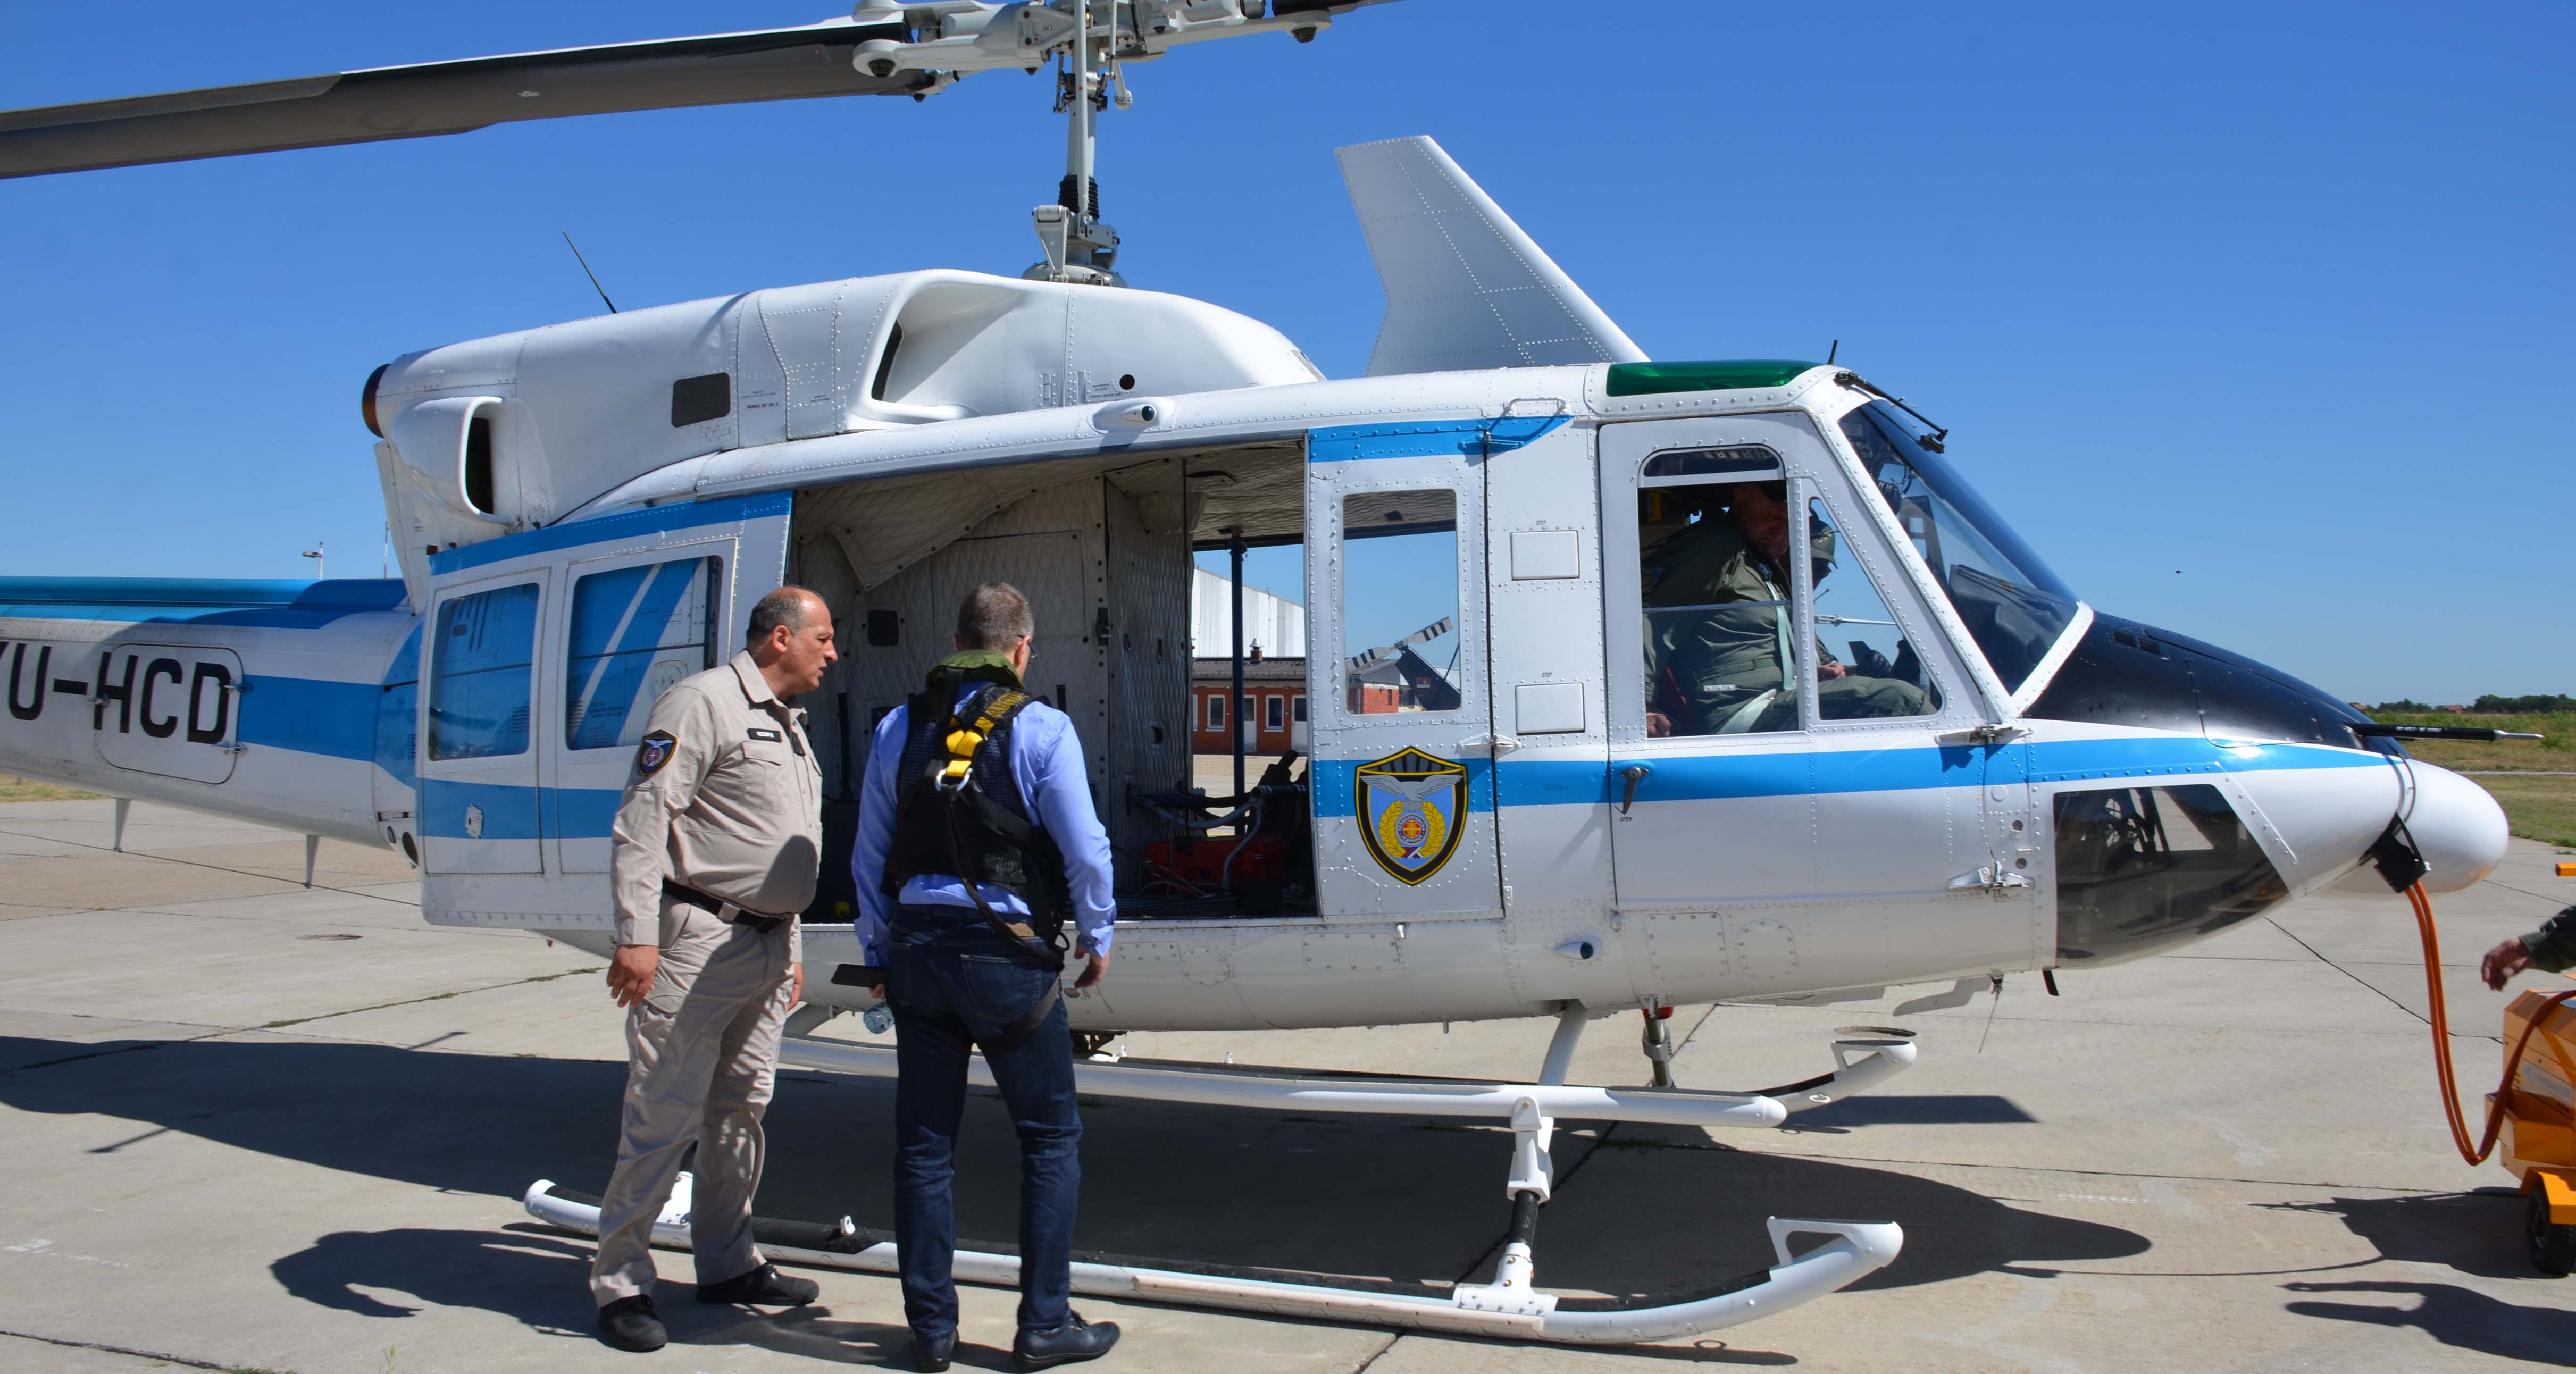 Хеликоптерскa јединицa увек спремна да извршава задатке